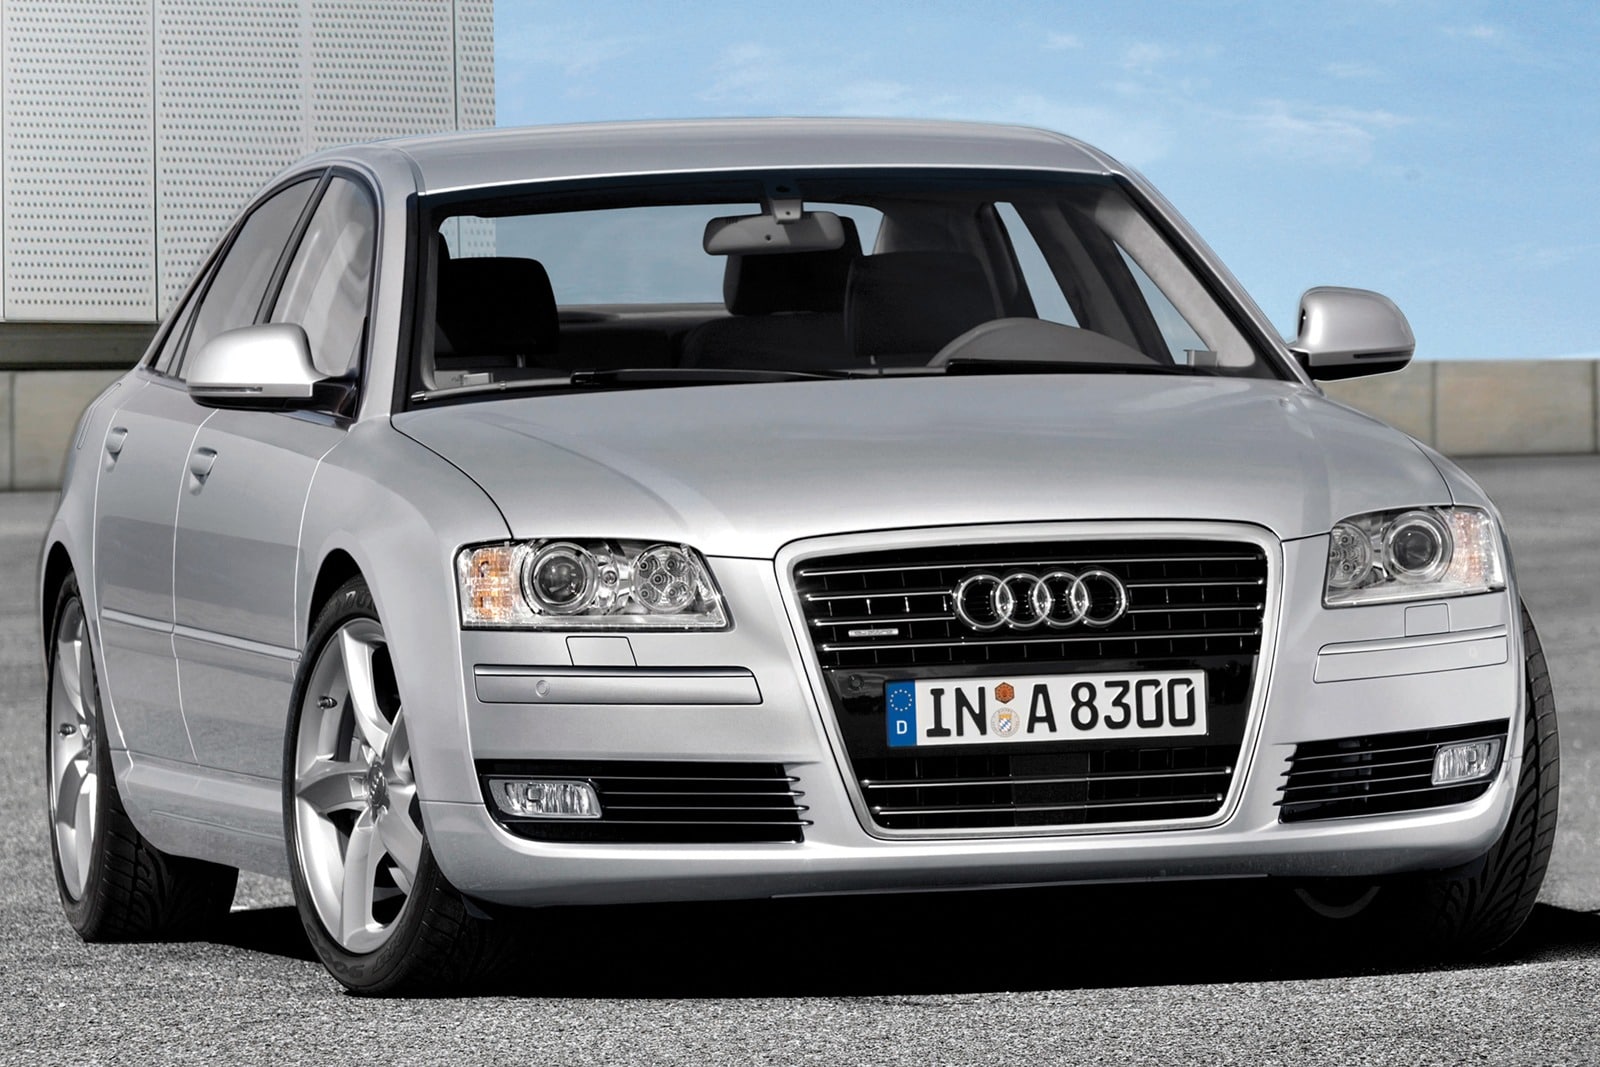 2008 Audi A8 Review & Ratings | Edmunds